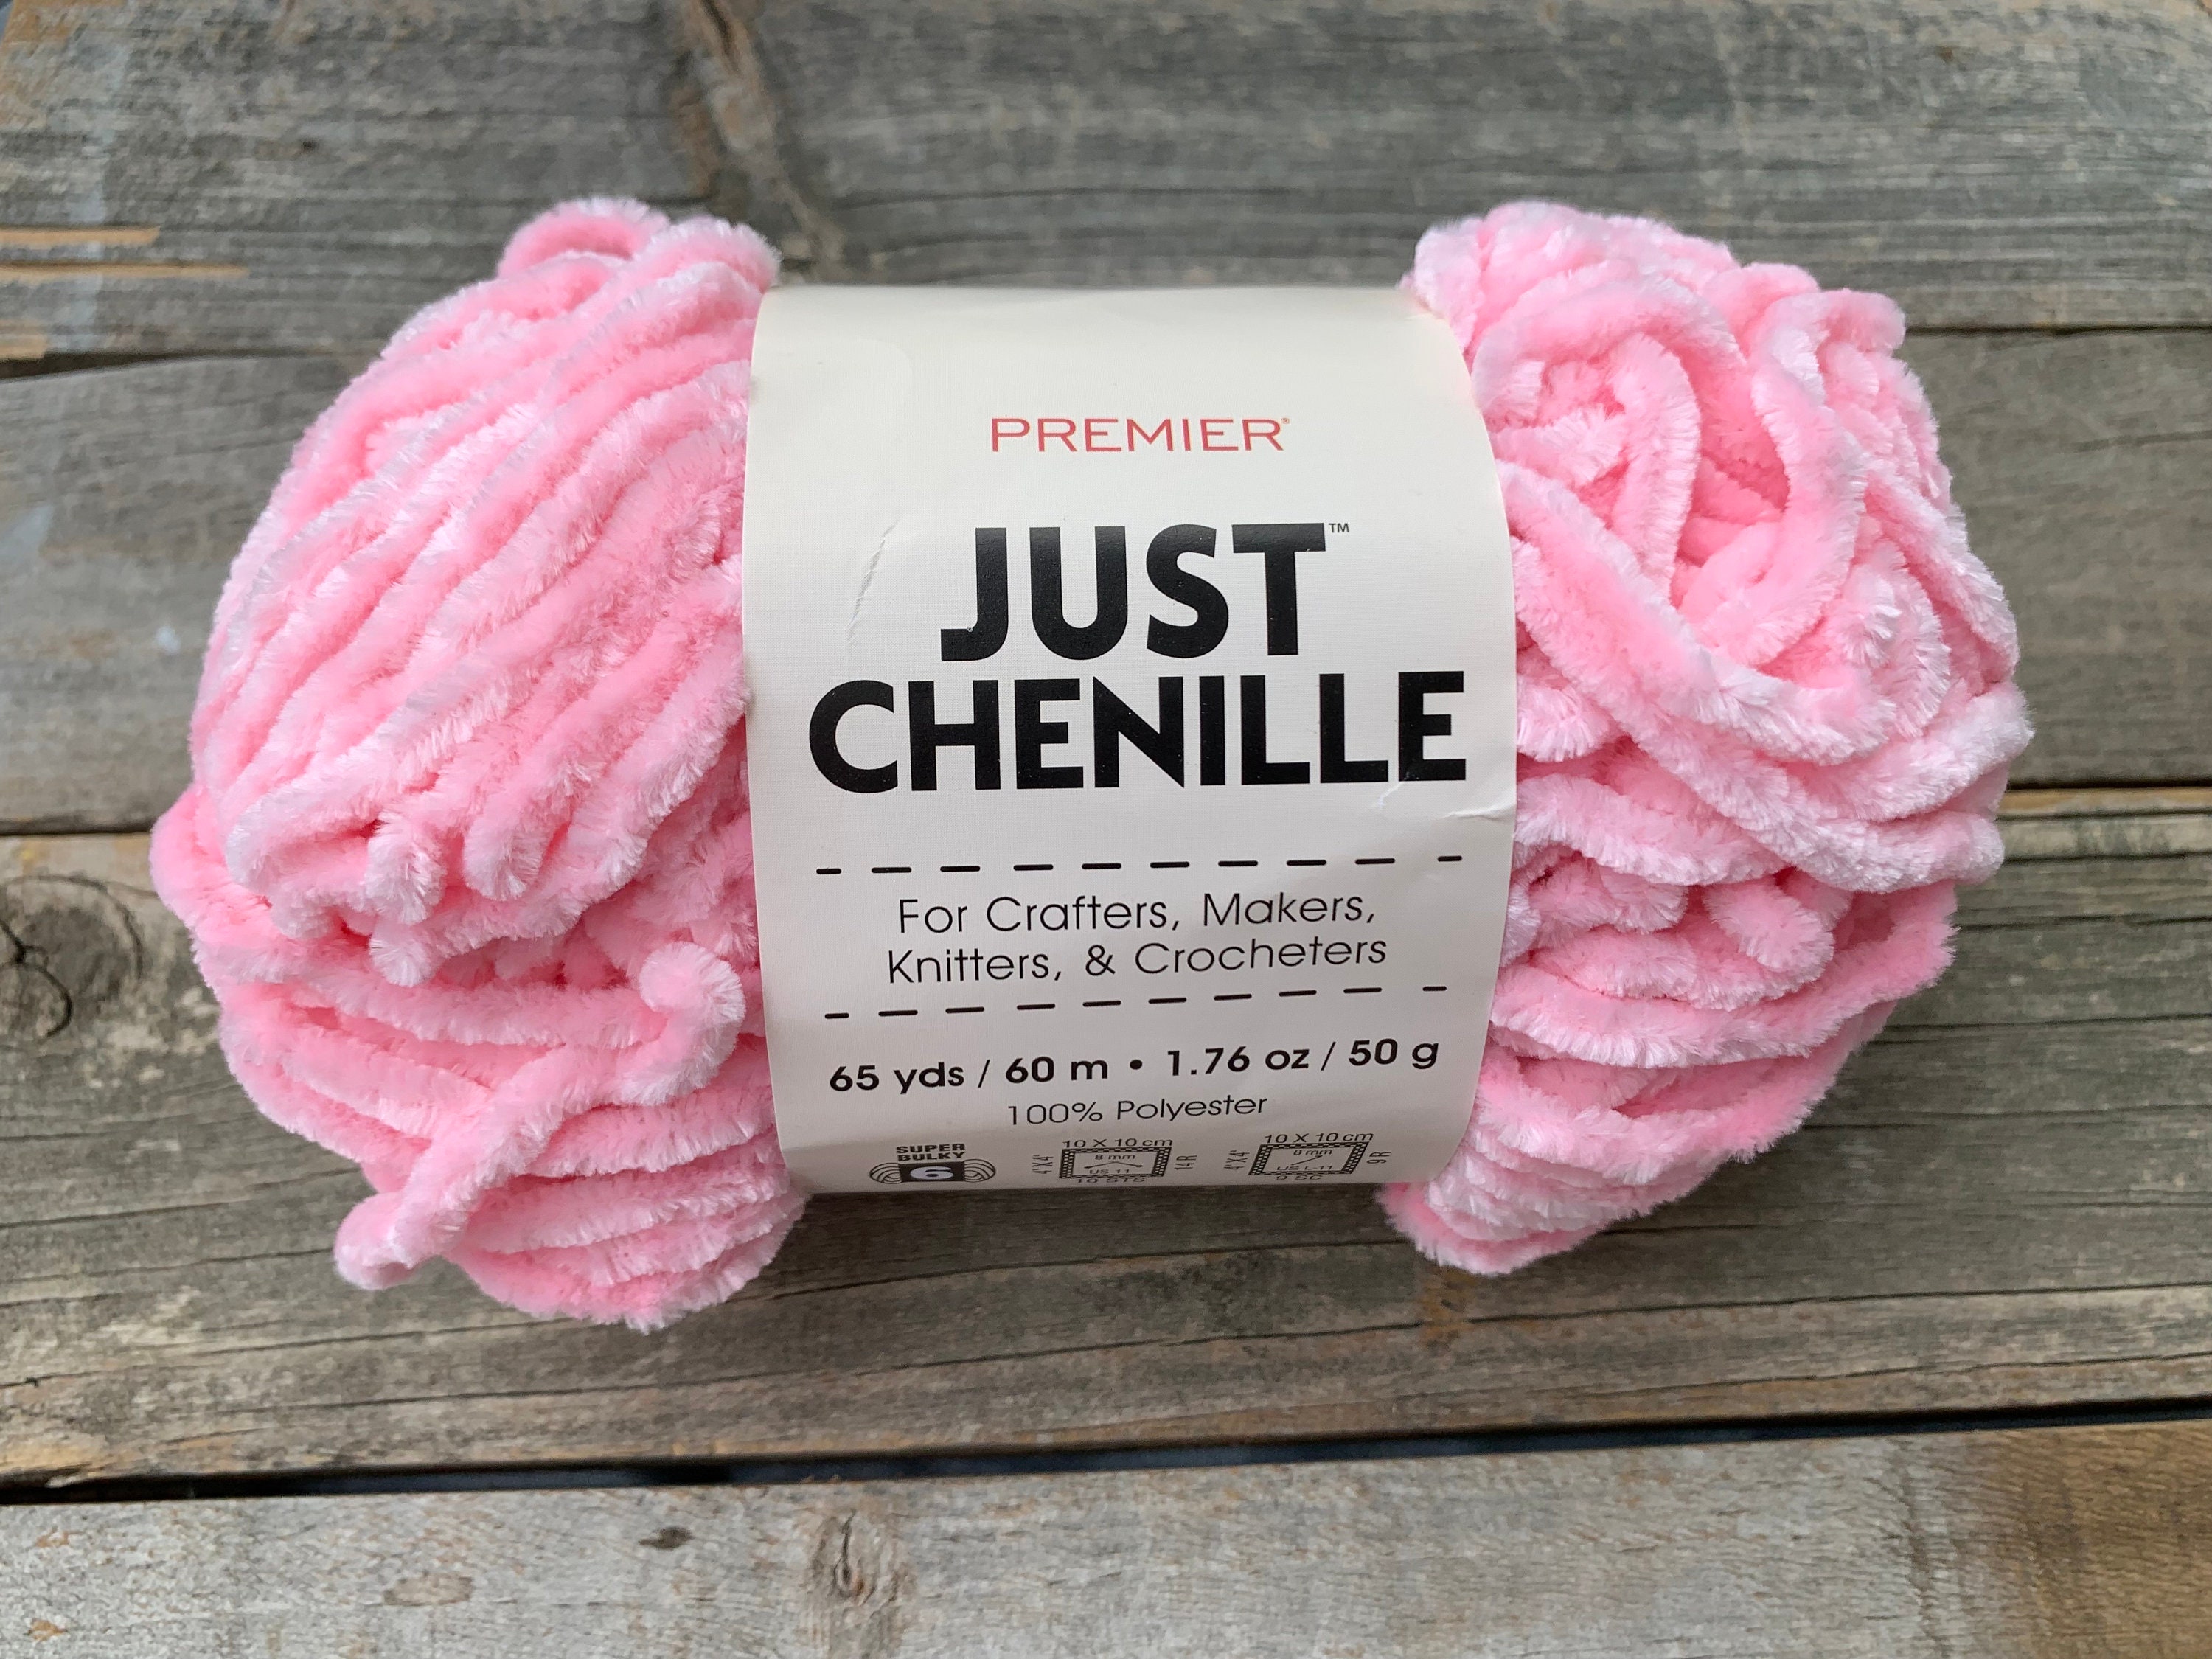 Premier Chenille Yarn in Pink Just Chenille Yarn Fuzzy Super Soft Yarn 